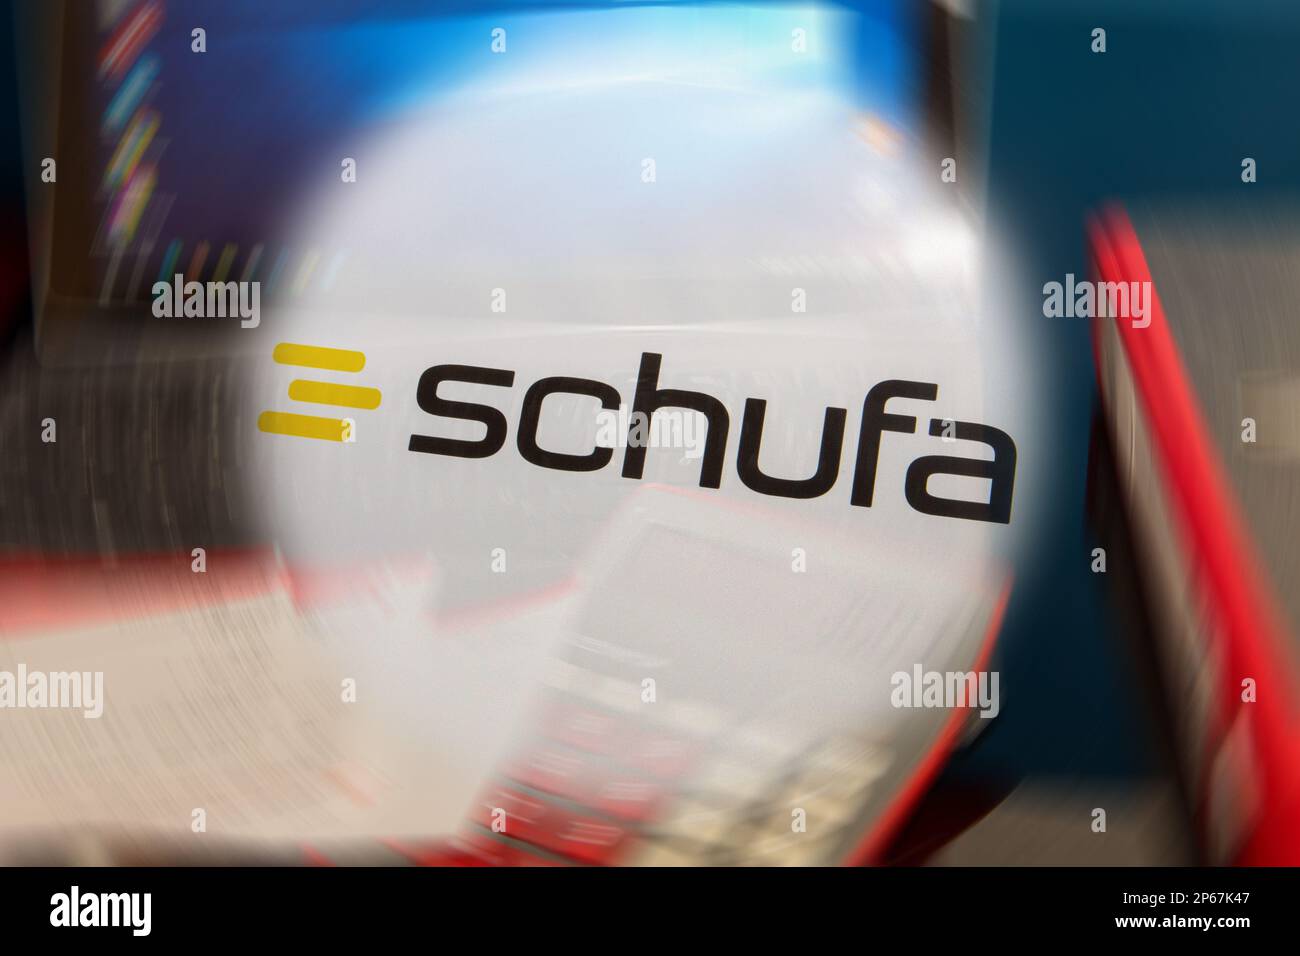 Immagine simbolo Schufa: Logo Schufa di fronte a una scrivania con tablet, calcolatrice e estratti conto (Schufa Holding AG, è un'agenzia di credito tedesca ITS b Foto Stock